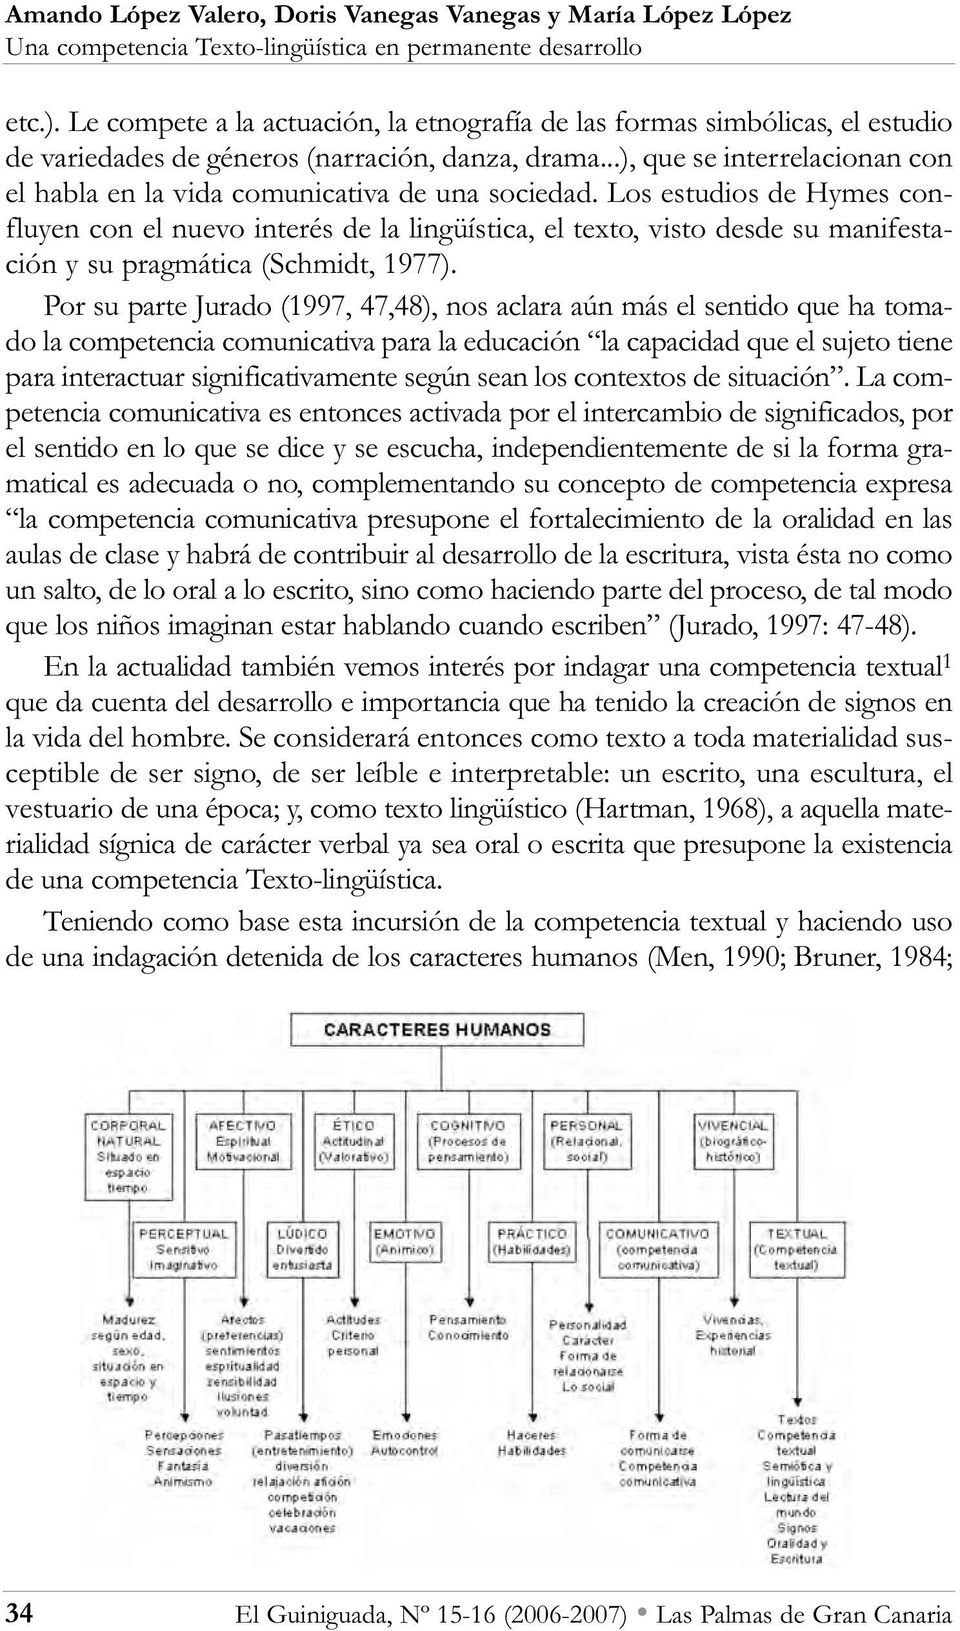 Los estudios de Hymes confluyen con el nuevo interés de la lingüística, el texto, visto desde su manifestación y su pragmática (Schmidt, 1977).